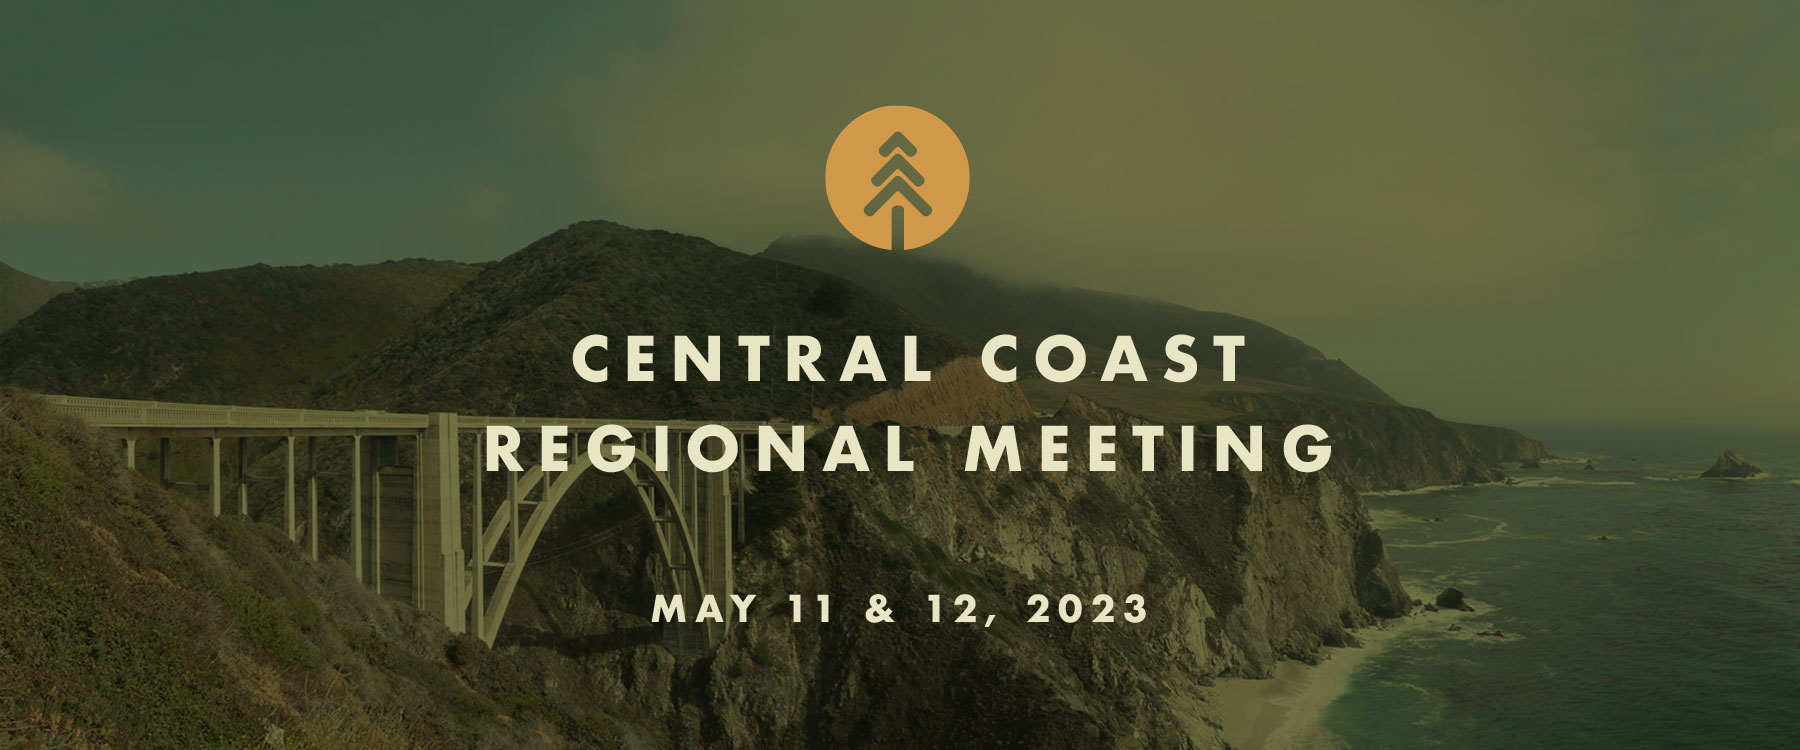 Regional meeting image